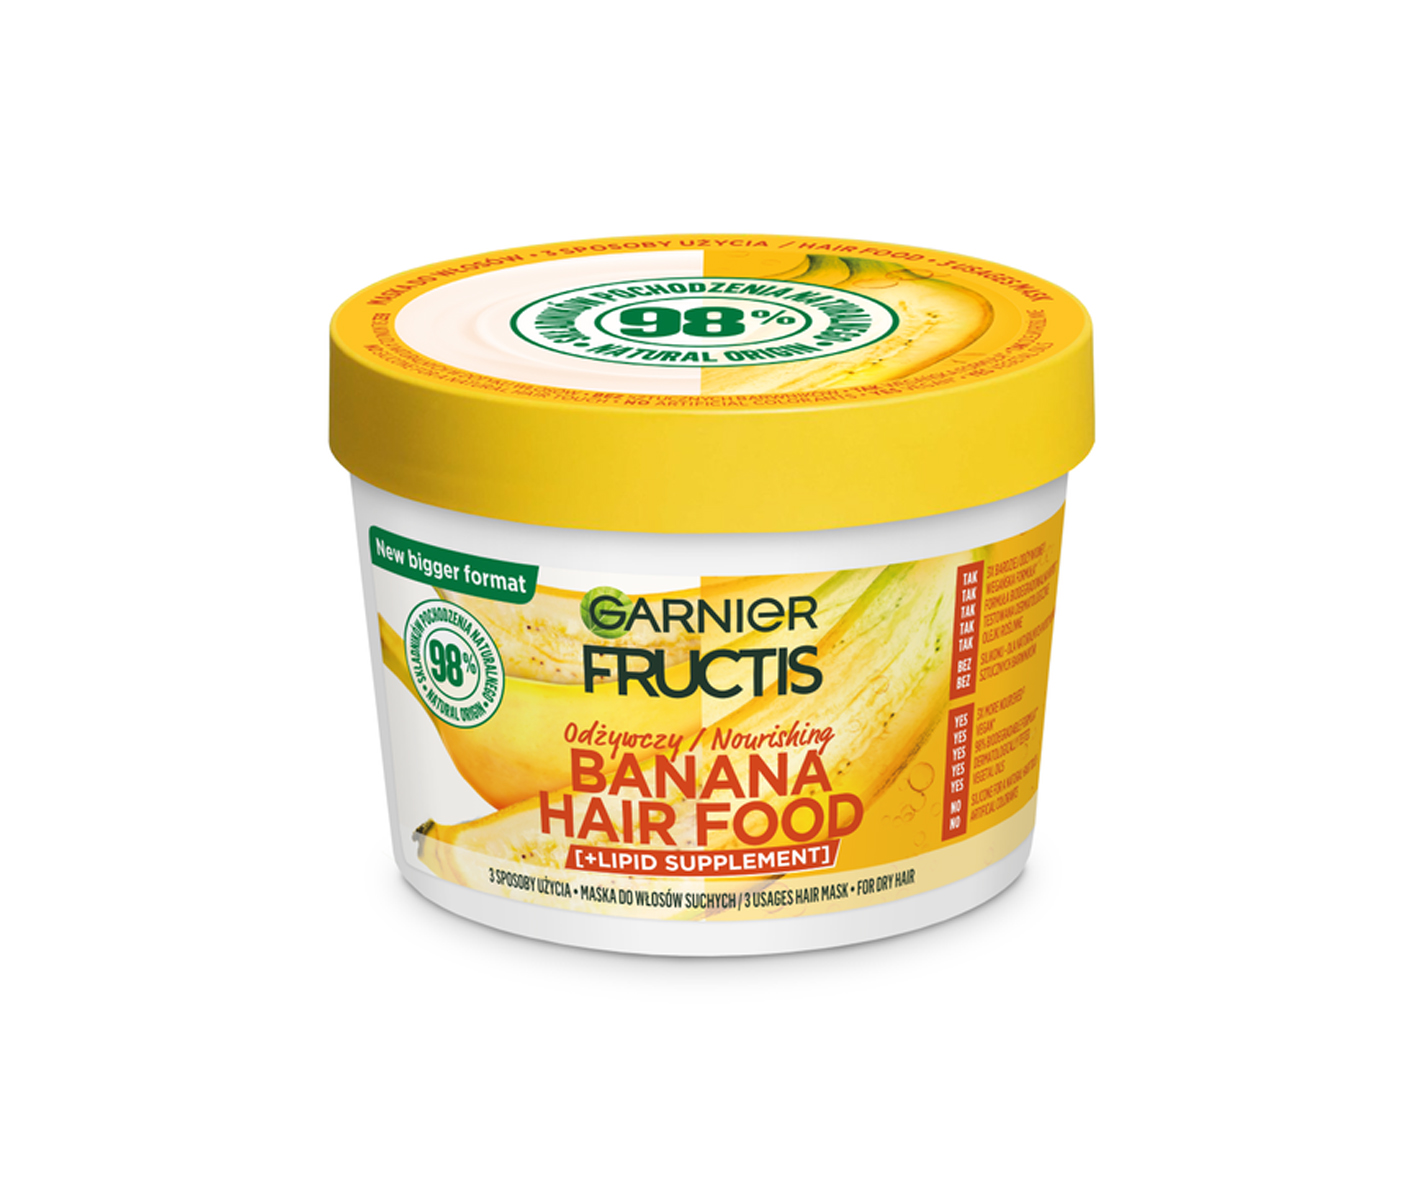 Garnier Fructis, Hair Food Banana, Dry Hair Mask